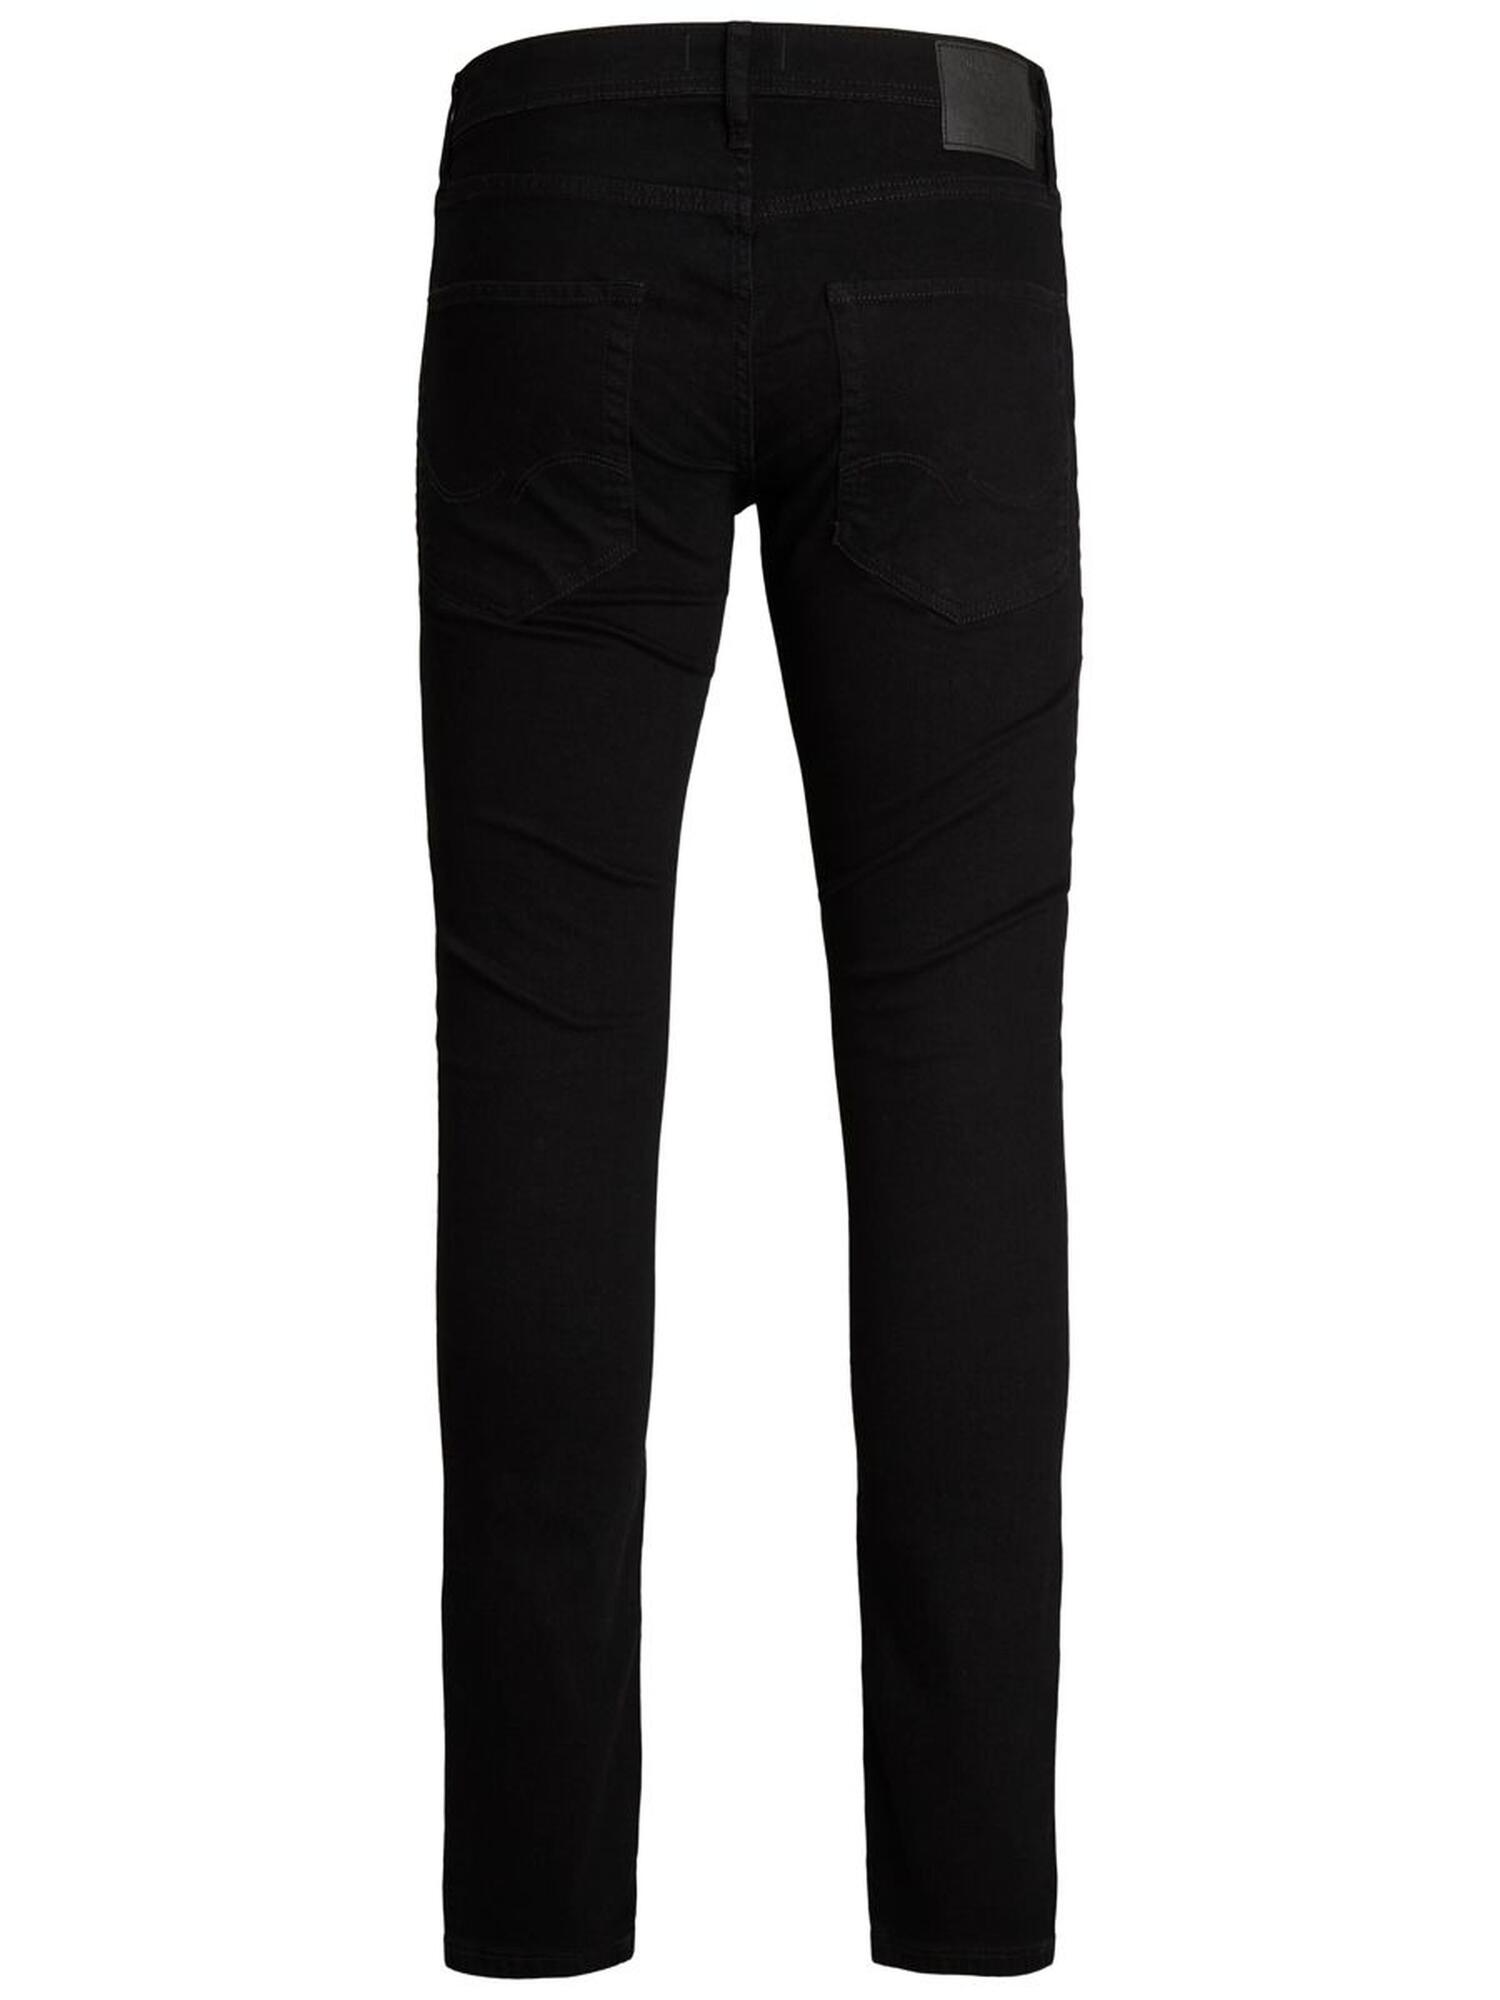 barriere Arbejdsløs Utålelig Sorte slim fit jeans i benlængde 32 inch - Jack & Jones